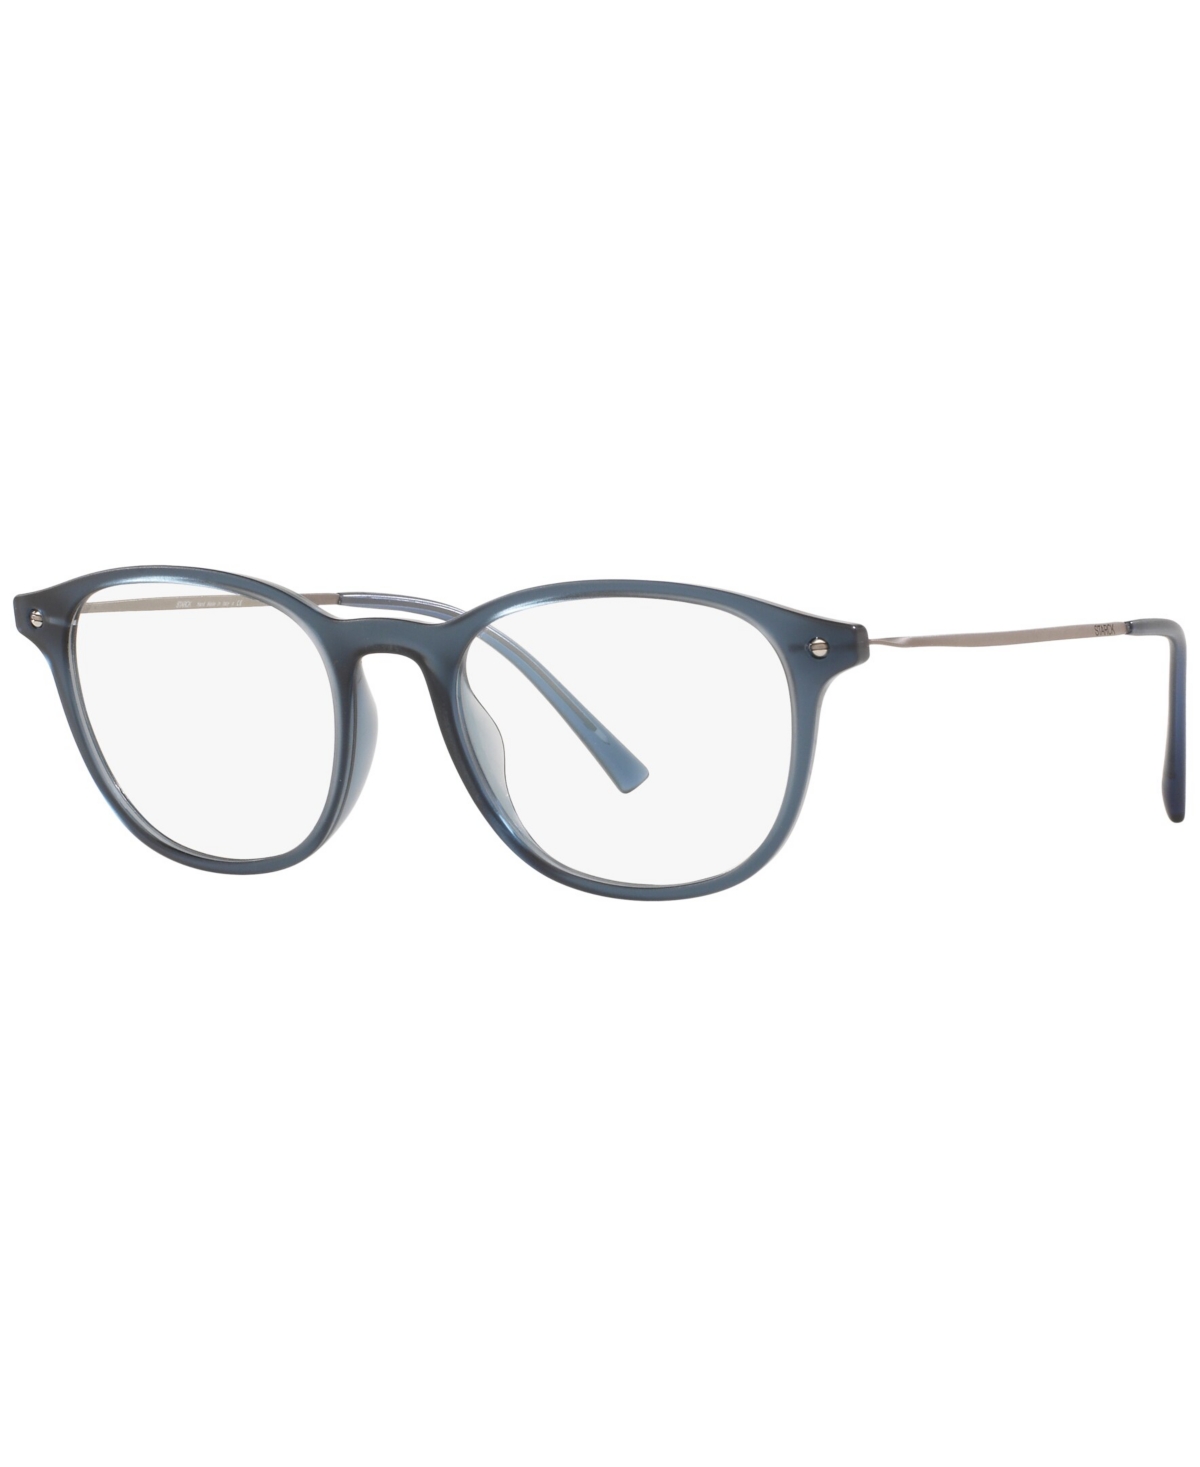 Men's Phantos Eyeglasses, SH306049-o - Blue